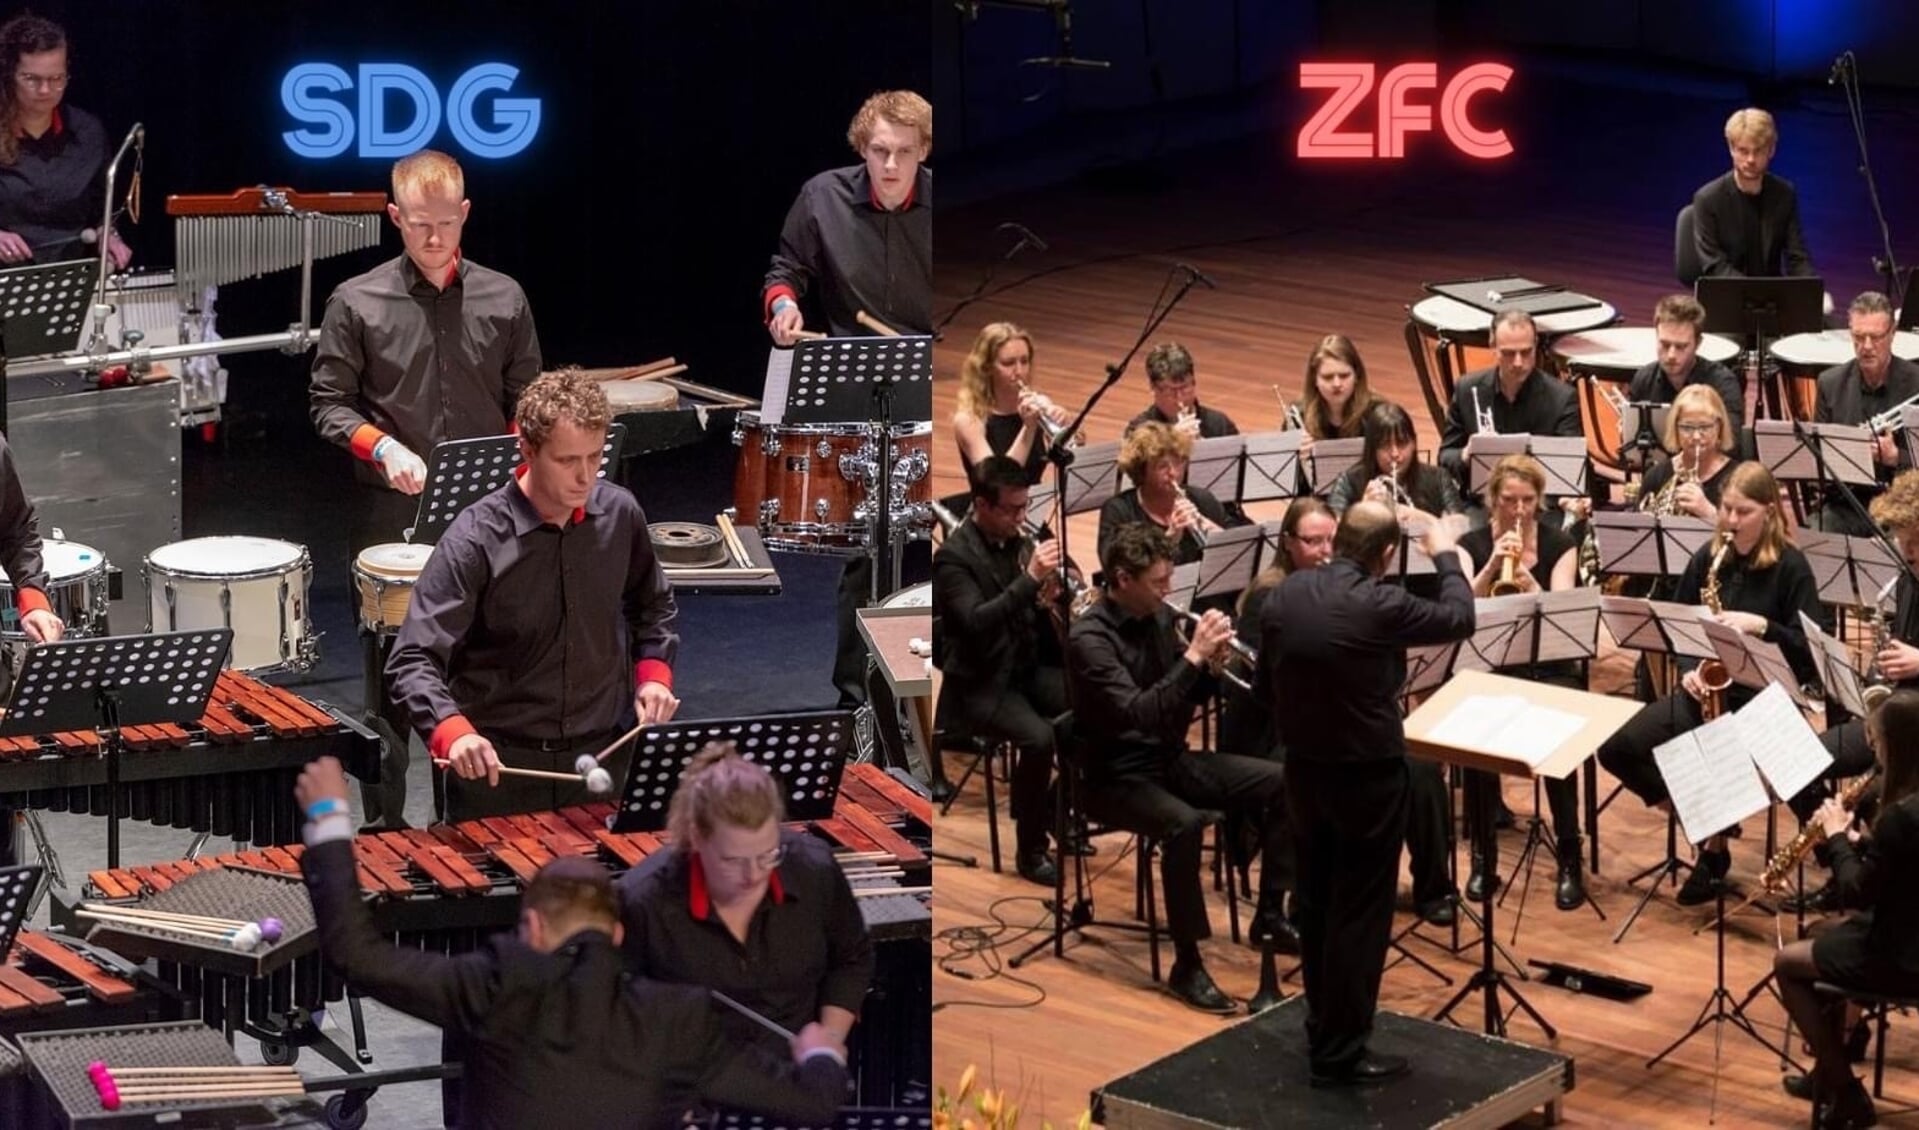 Muziekvereniging en orkest ZFC Zaandijk speelt op 18 maart, samen met het slagwerkensemble SDG Ommen, ter voorbereiding van hun Nederlandse Kampioenschappen. 